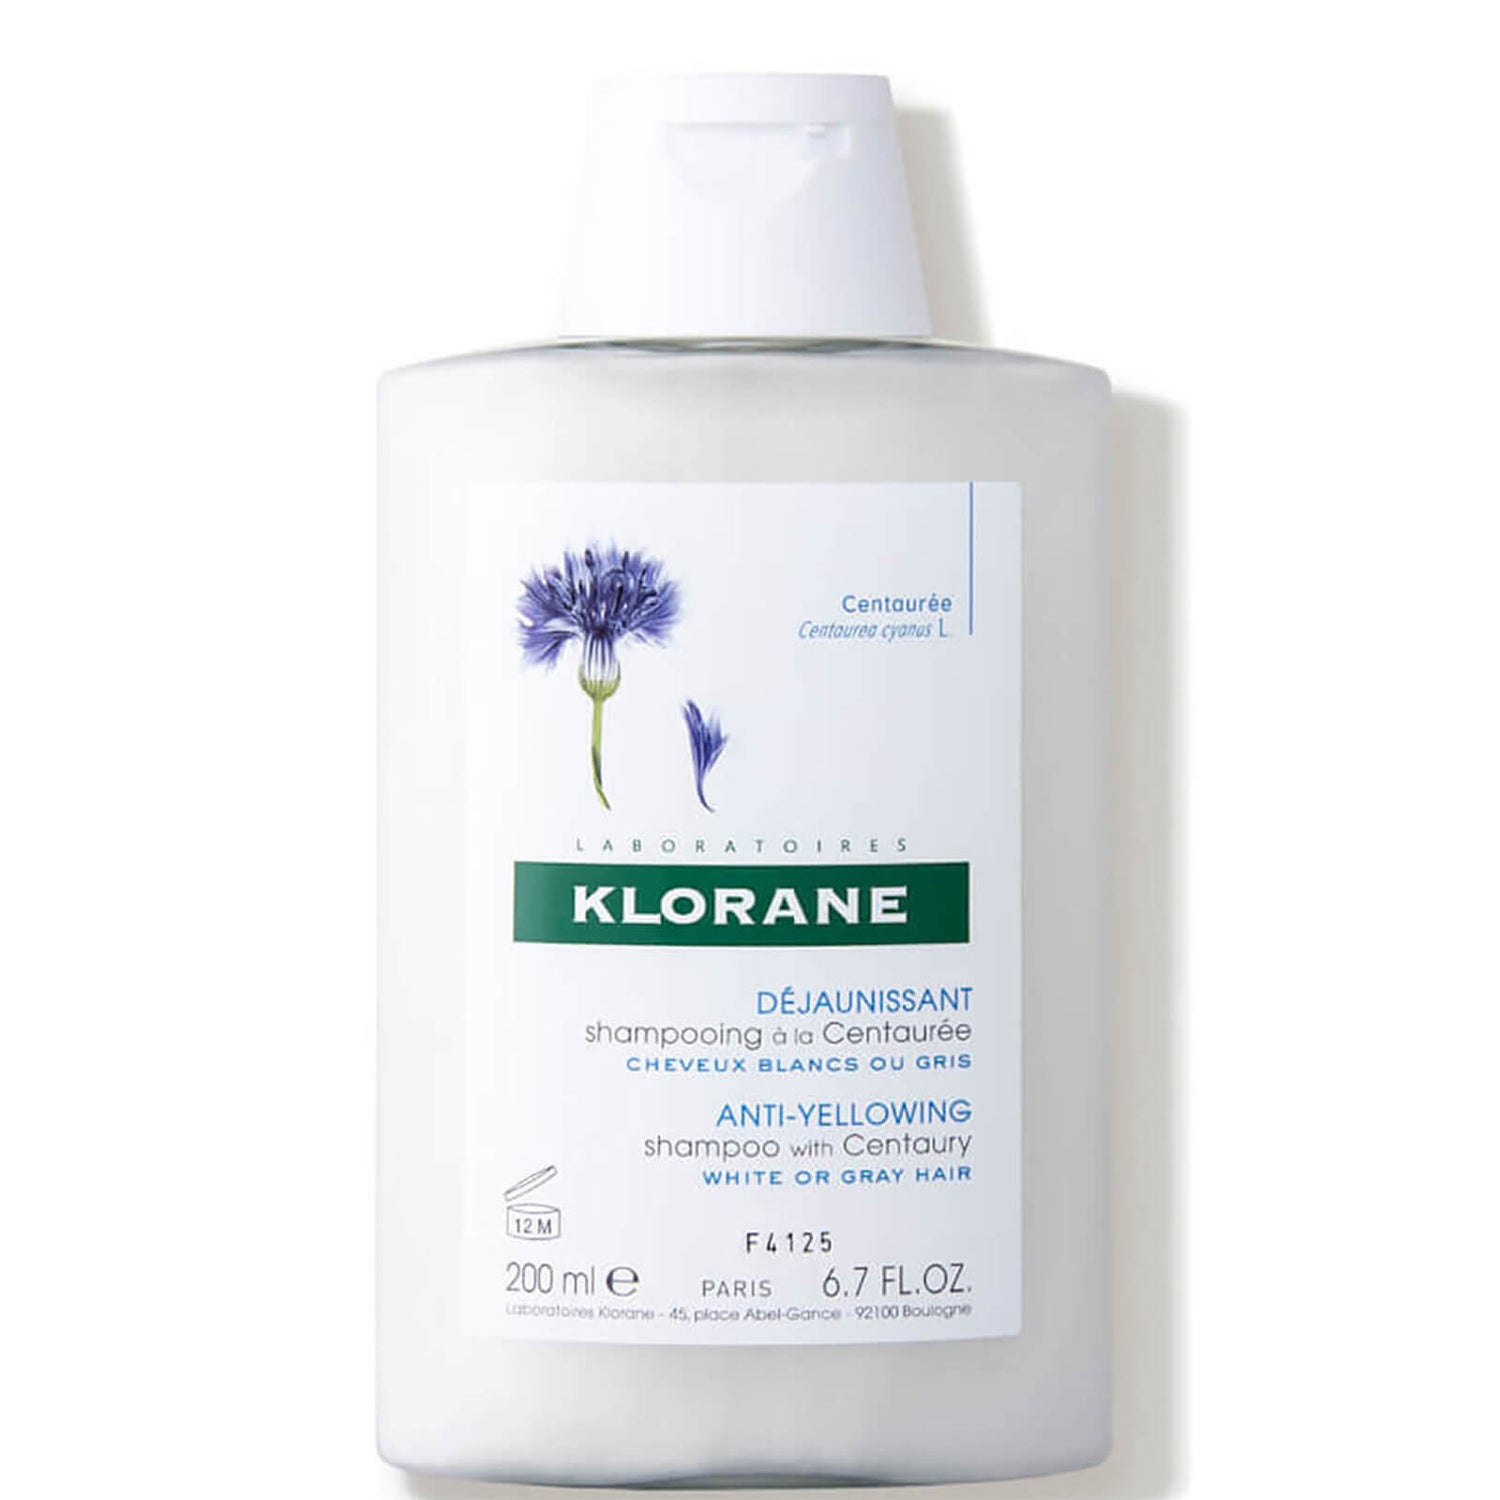 KLORANE Centaury shampooing du bleuet cheveux gris (200ml)